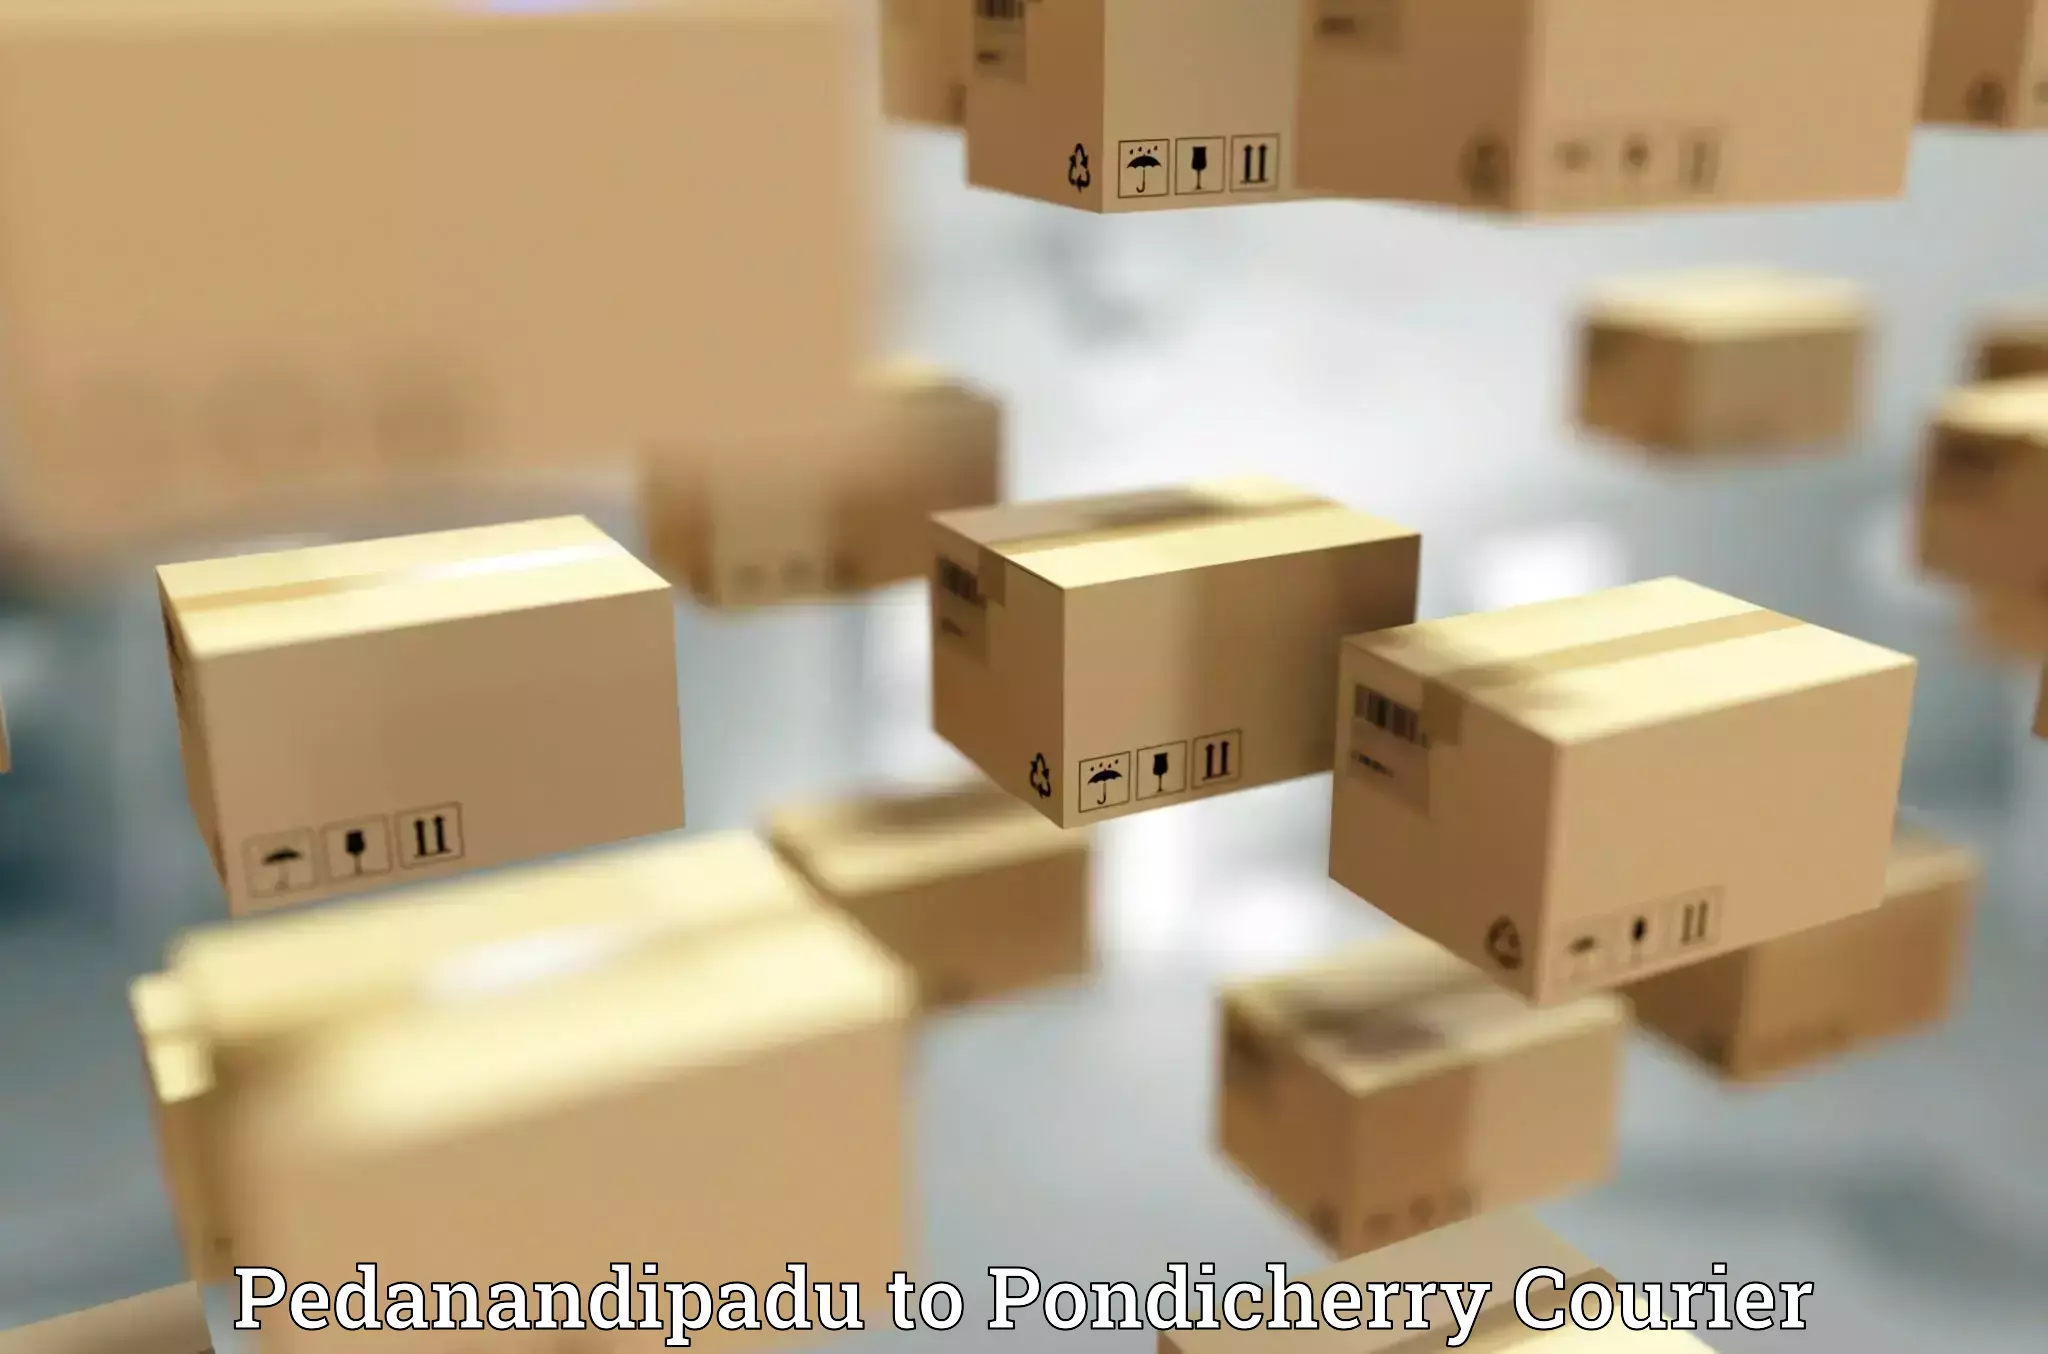 Special handling courier in Pedanandipadu to Pondicherry University